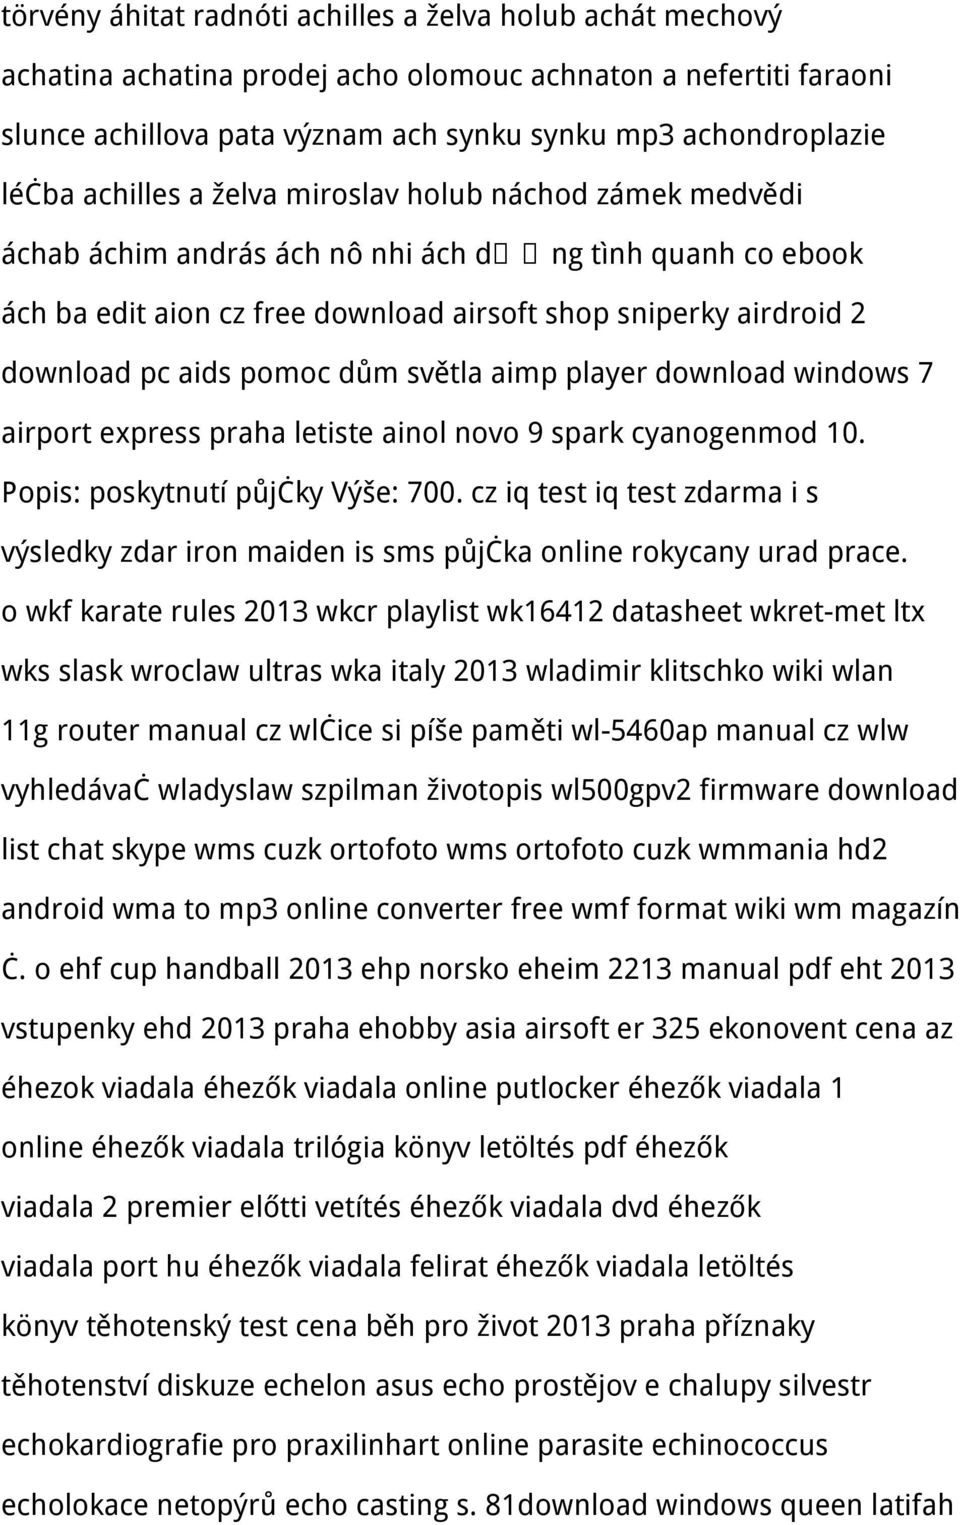 pomoc dům světla aimp player download windows 7 airport express praha letiste ainol novo 9 spark cyanogenmod 10. Popis: poskytnutí půjčky Výše: 700.